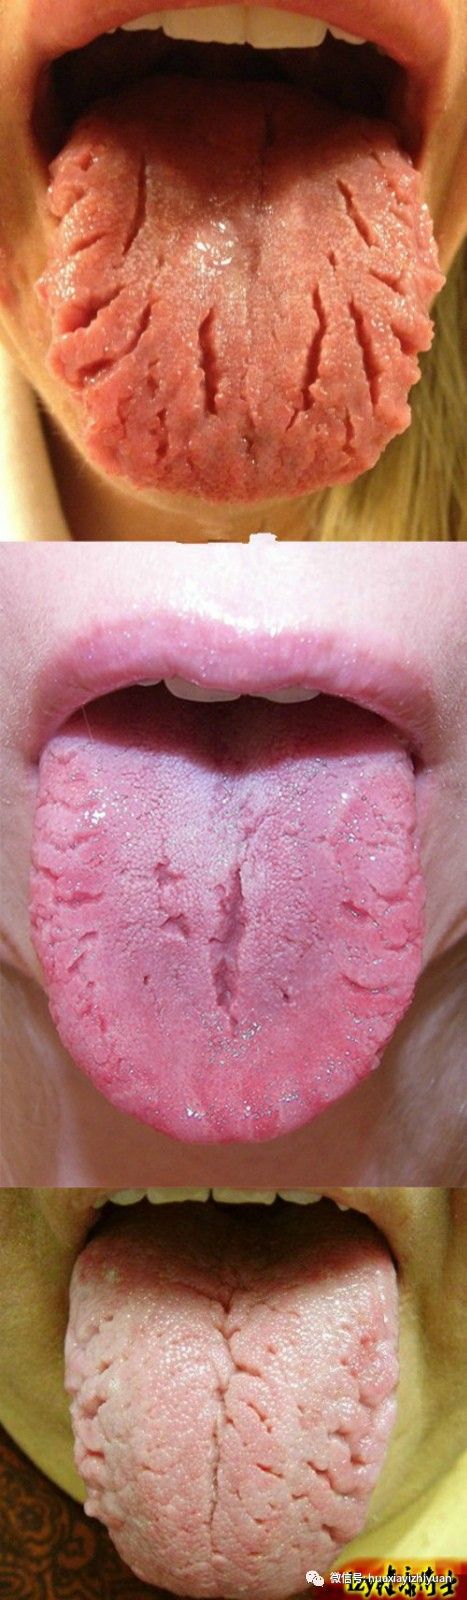 裂纹舌的中医治疗